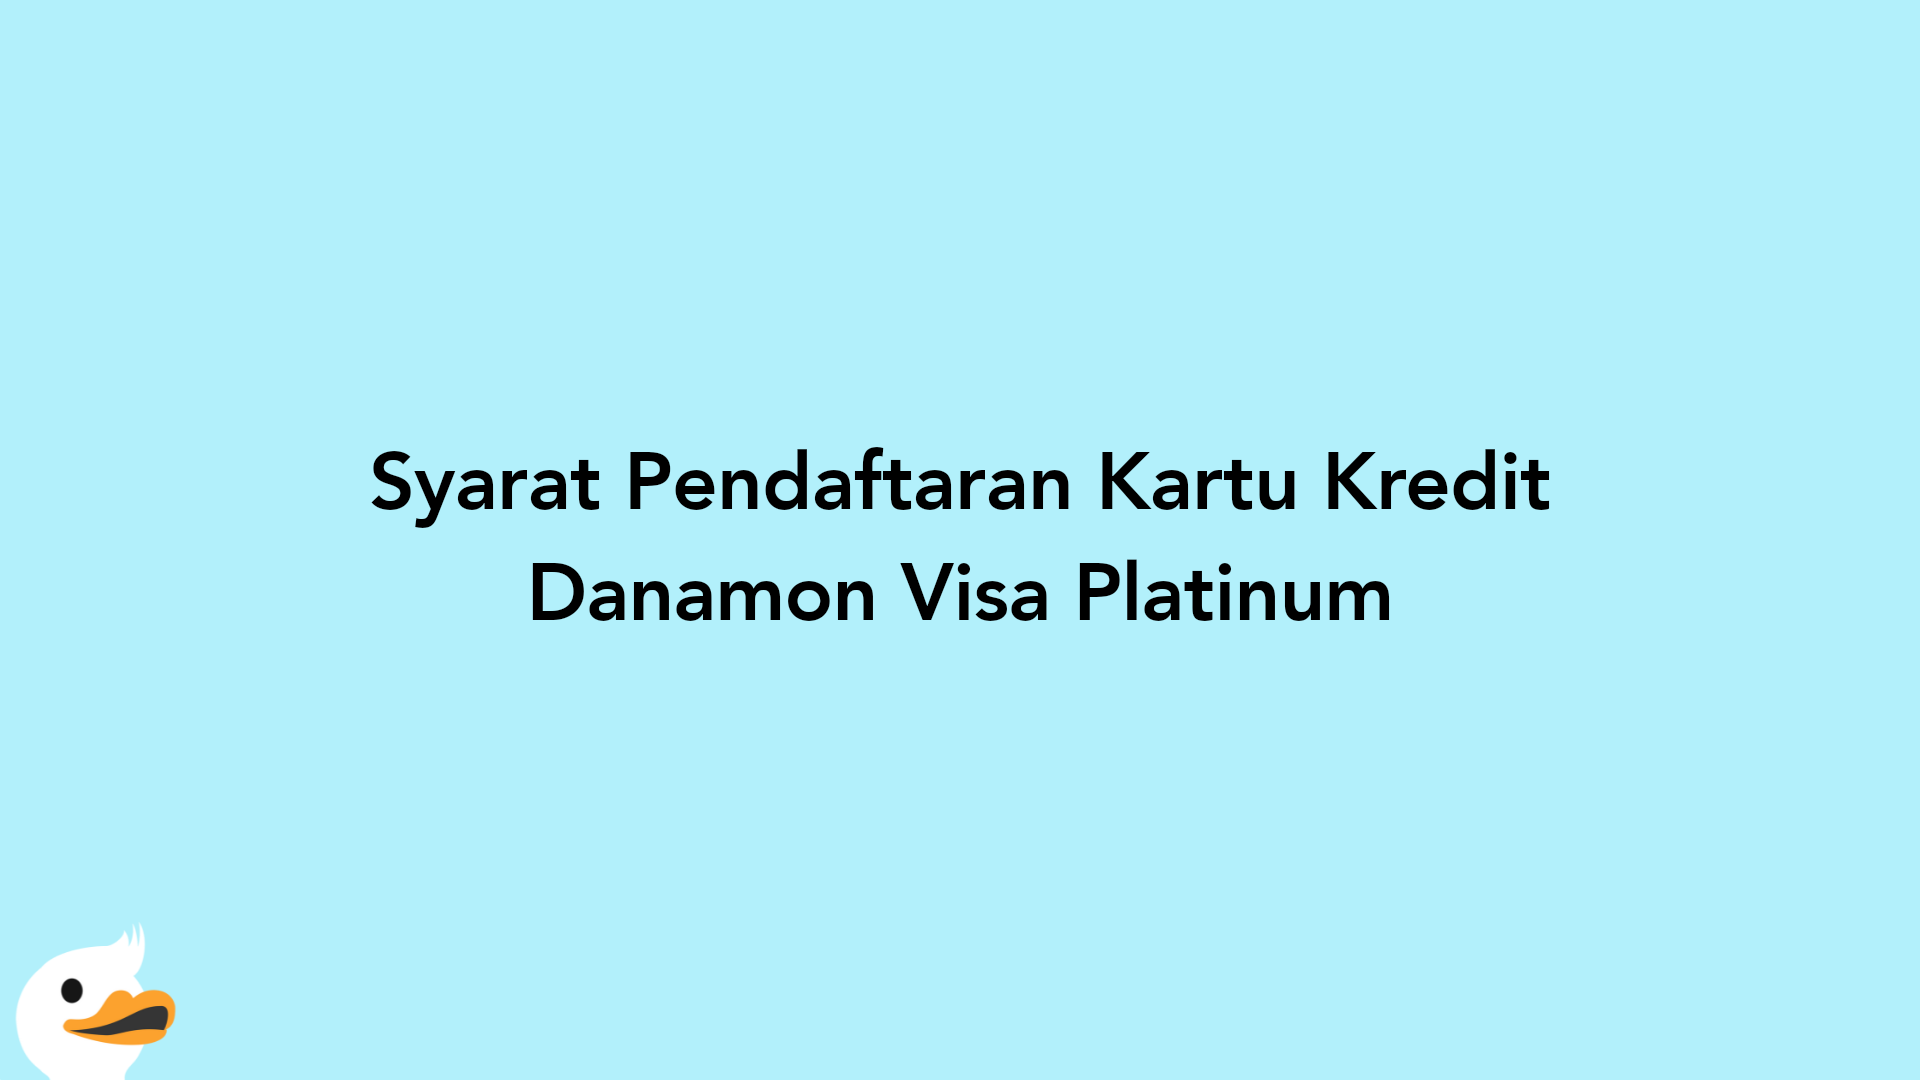 Syarat Pendaftaran Kartu Kredit Danamon Visa Platinum